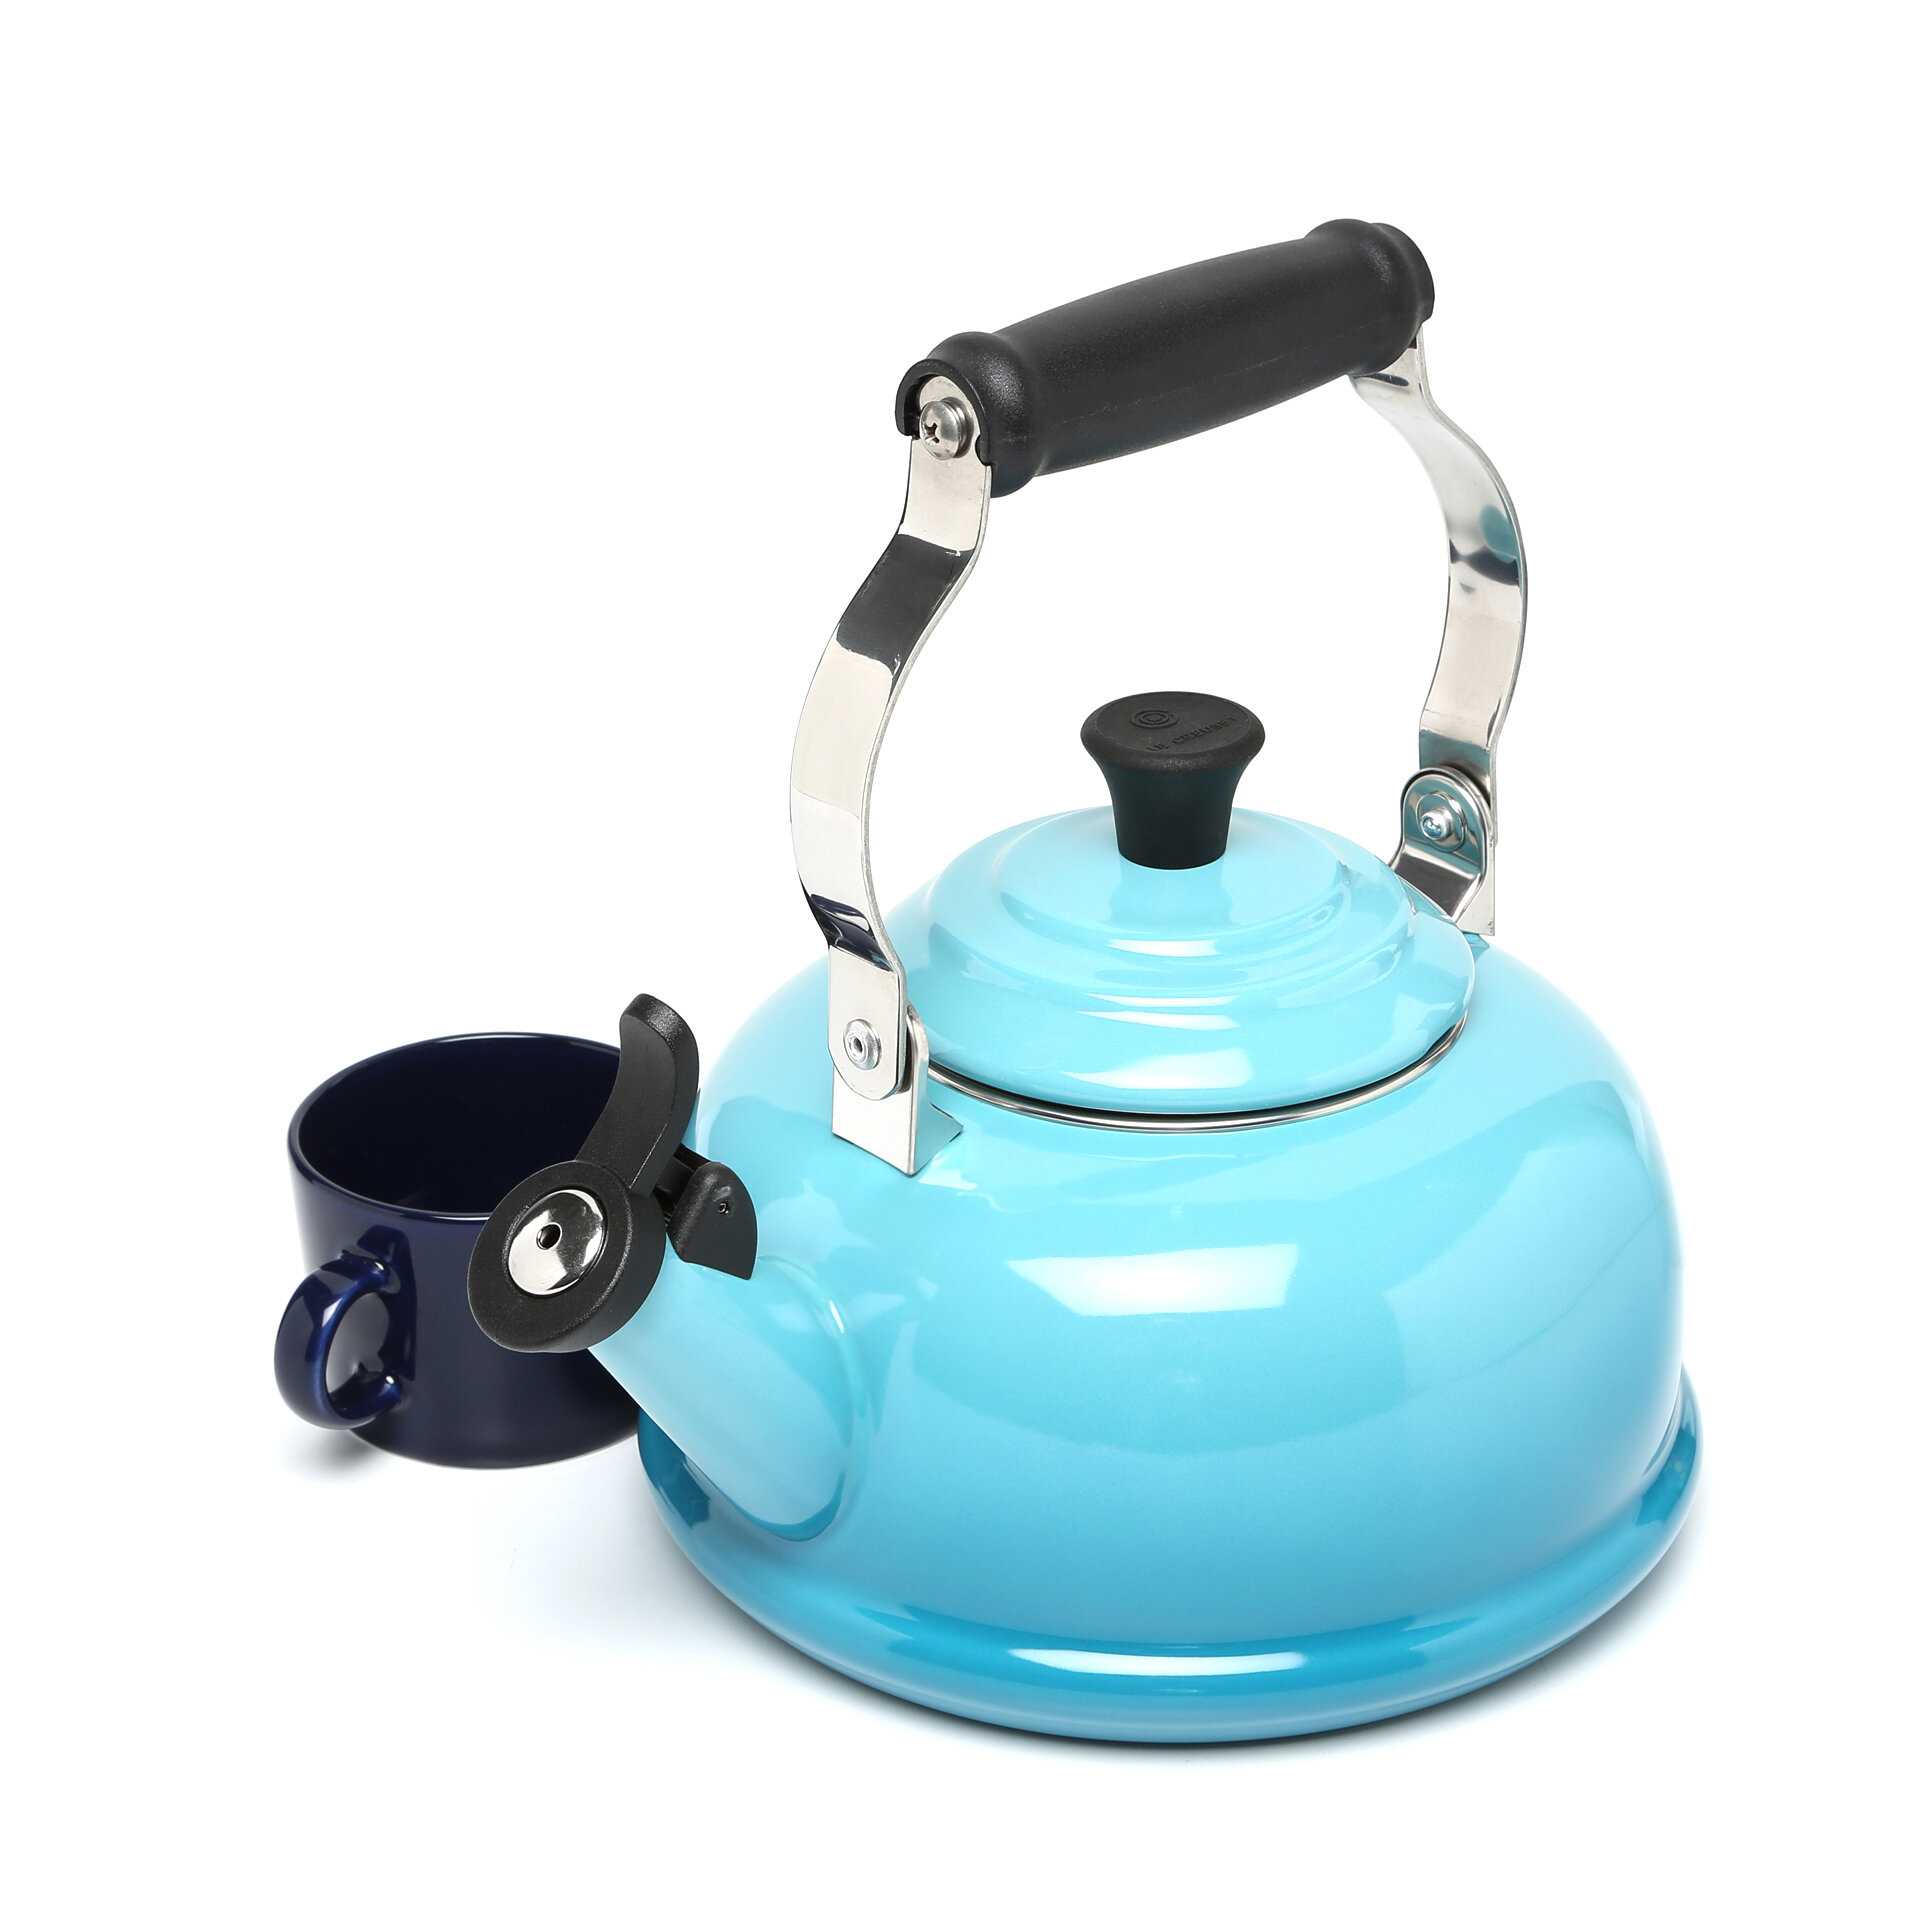 Virgil Abloh, Tea kettle, model 3909 (2022)